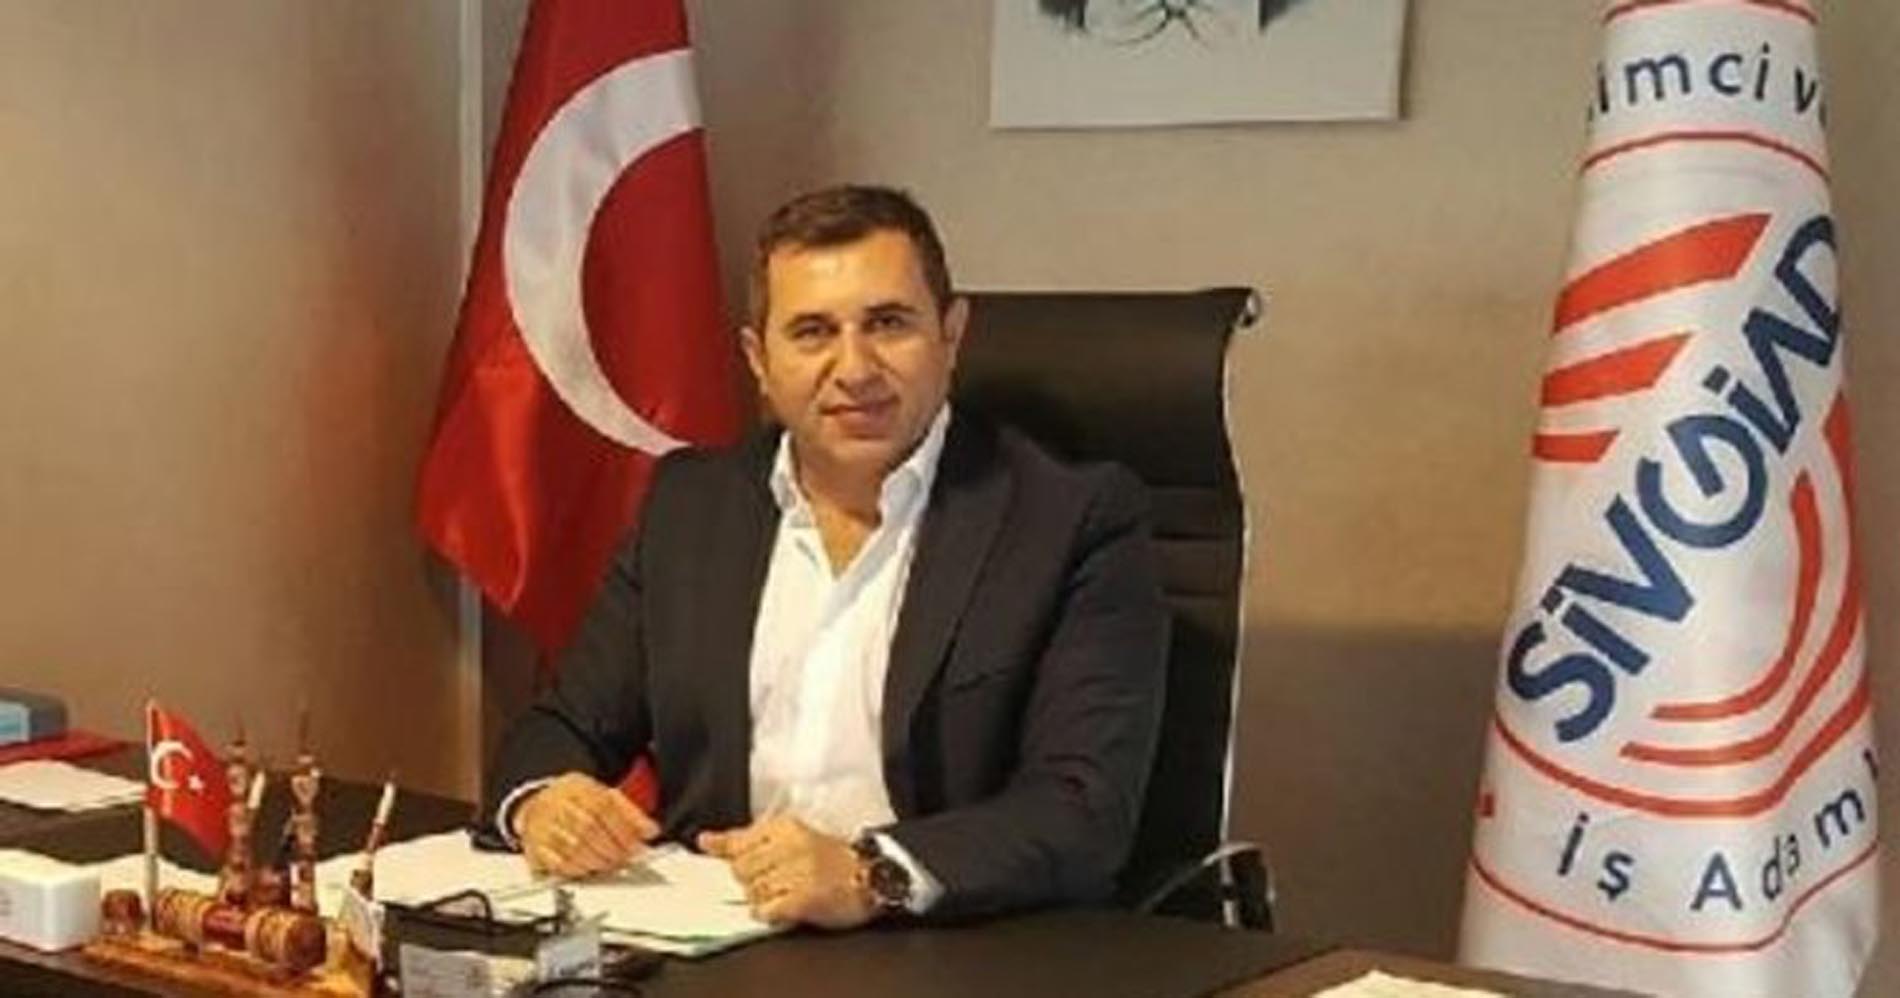 İmranlı Belediye Başkanı Murat Açıl kaza yaptı, 5 ağır yaralı! Sivas Valisi Salih Ayhan kazaya ilişkin açıklama yaptı!